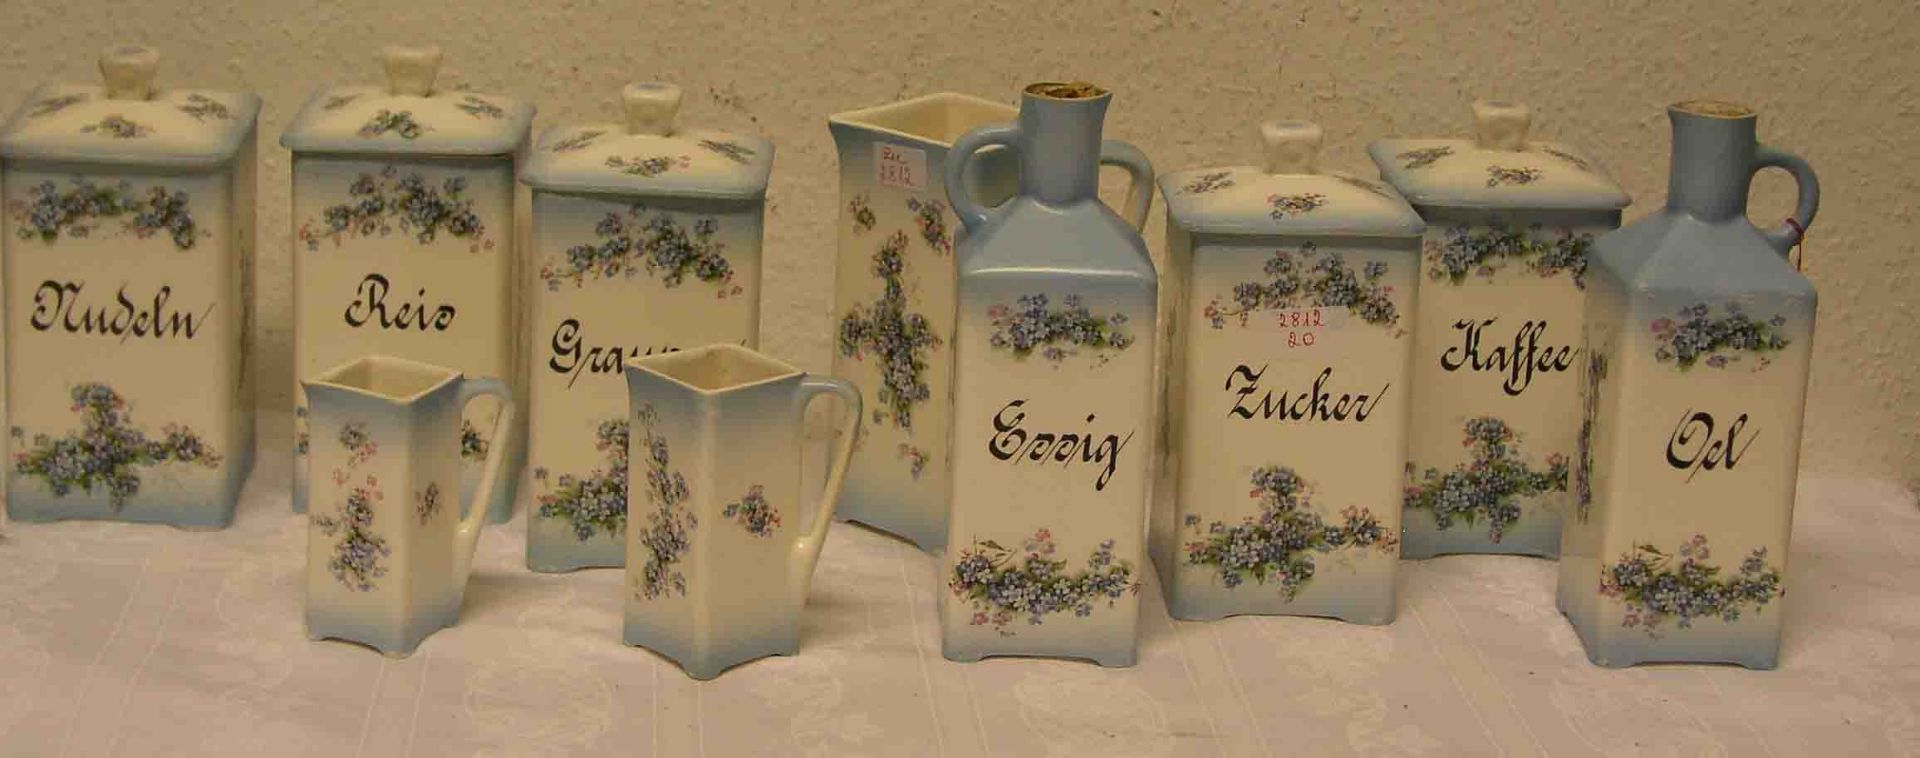 Gewürzset. Zehnteilig. Keramik, um 1920. Blumendekor, Gebrauchsspuren.